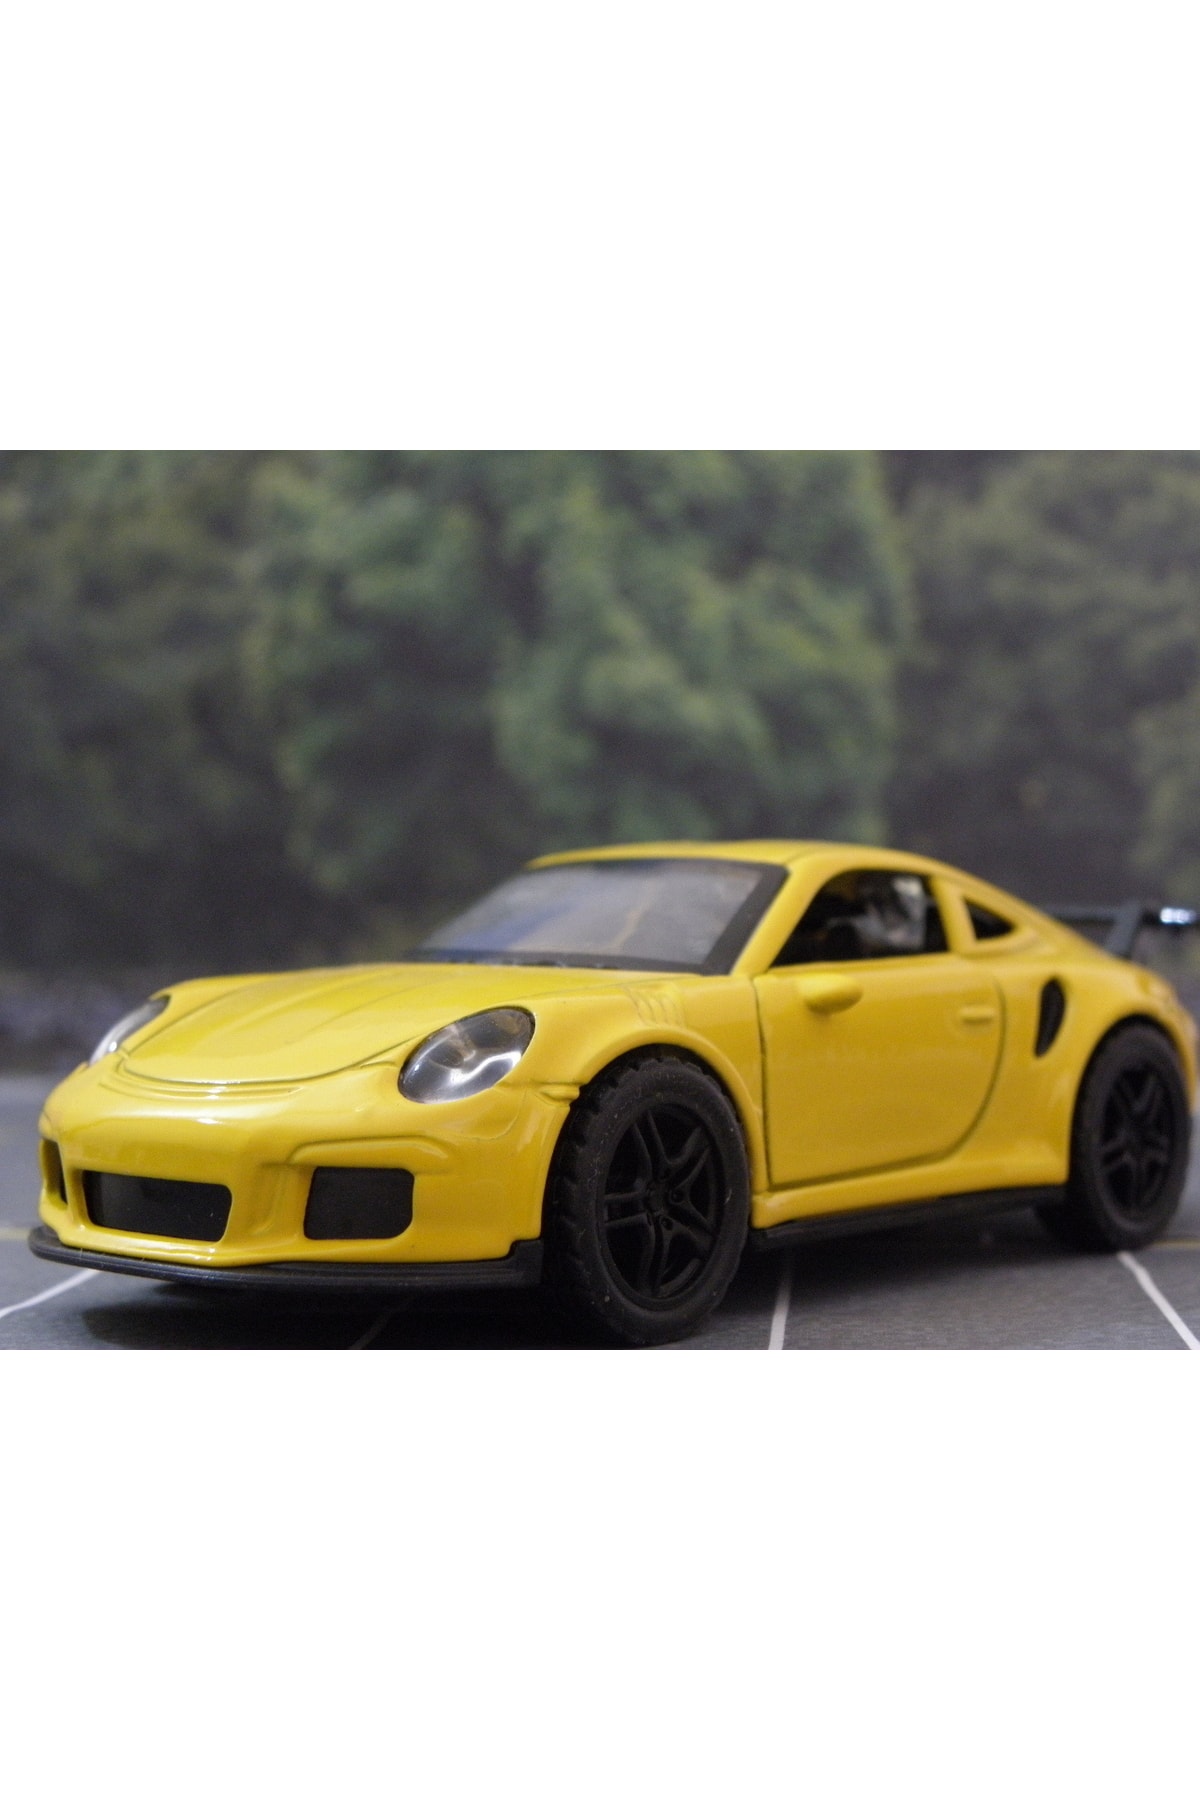 KOLEKSİYON ARABA Porsche 911 Diecast Metal Çek Bırak Oyuncak Araba